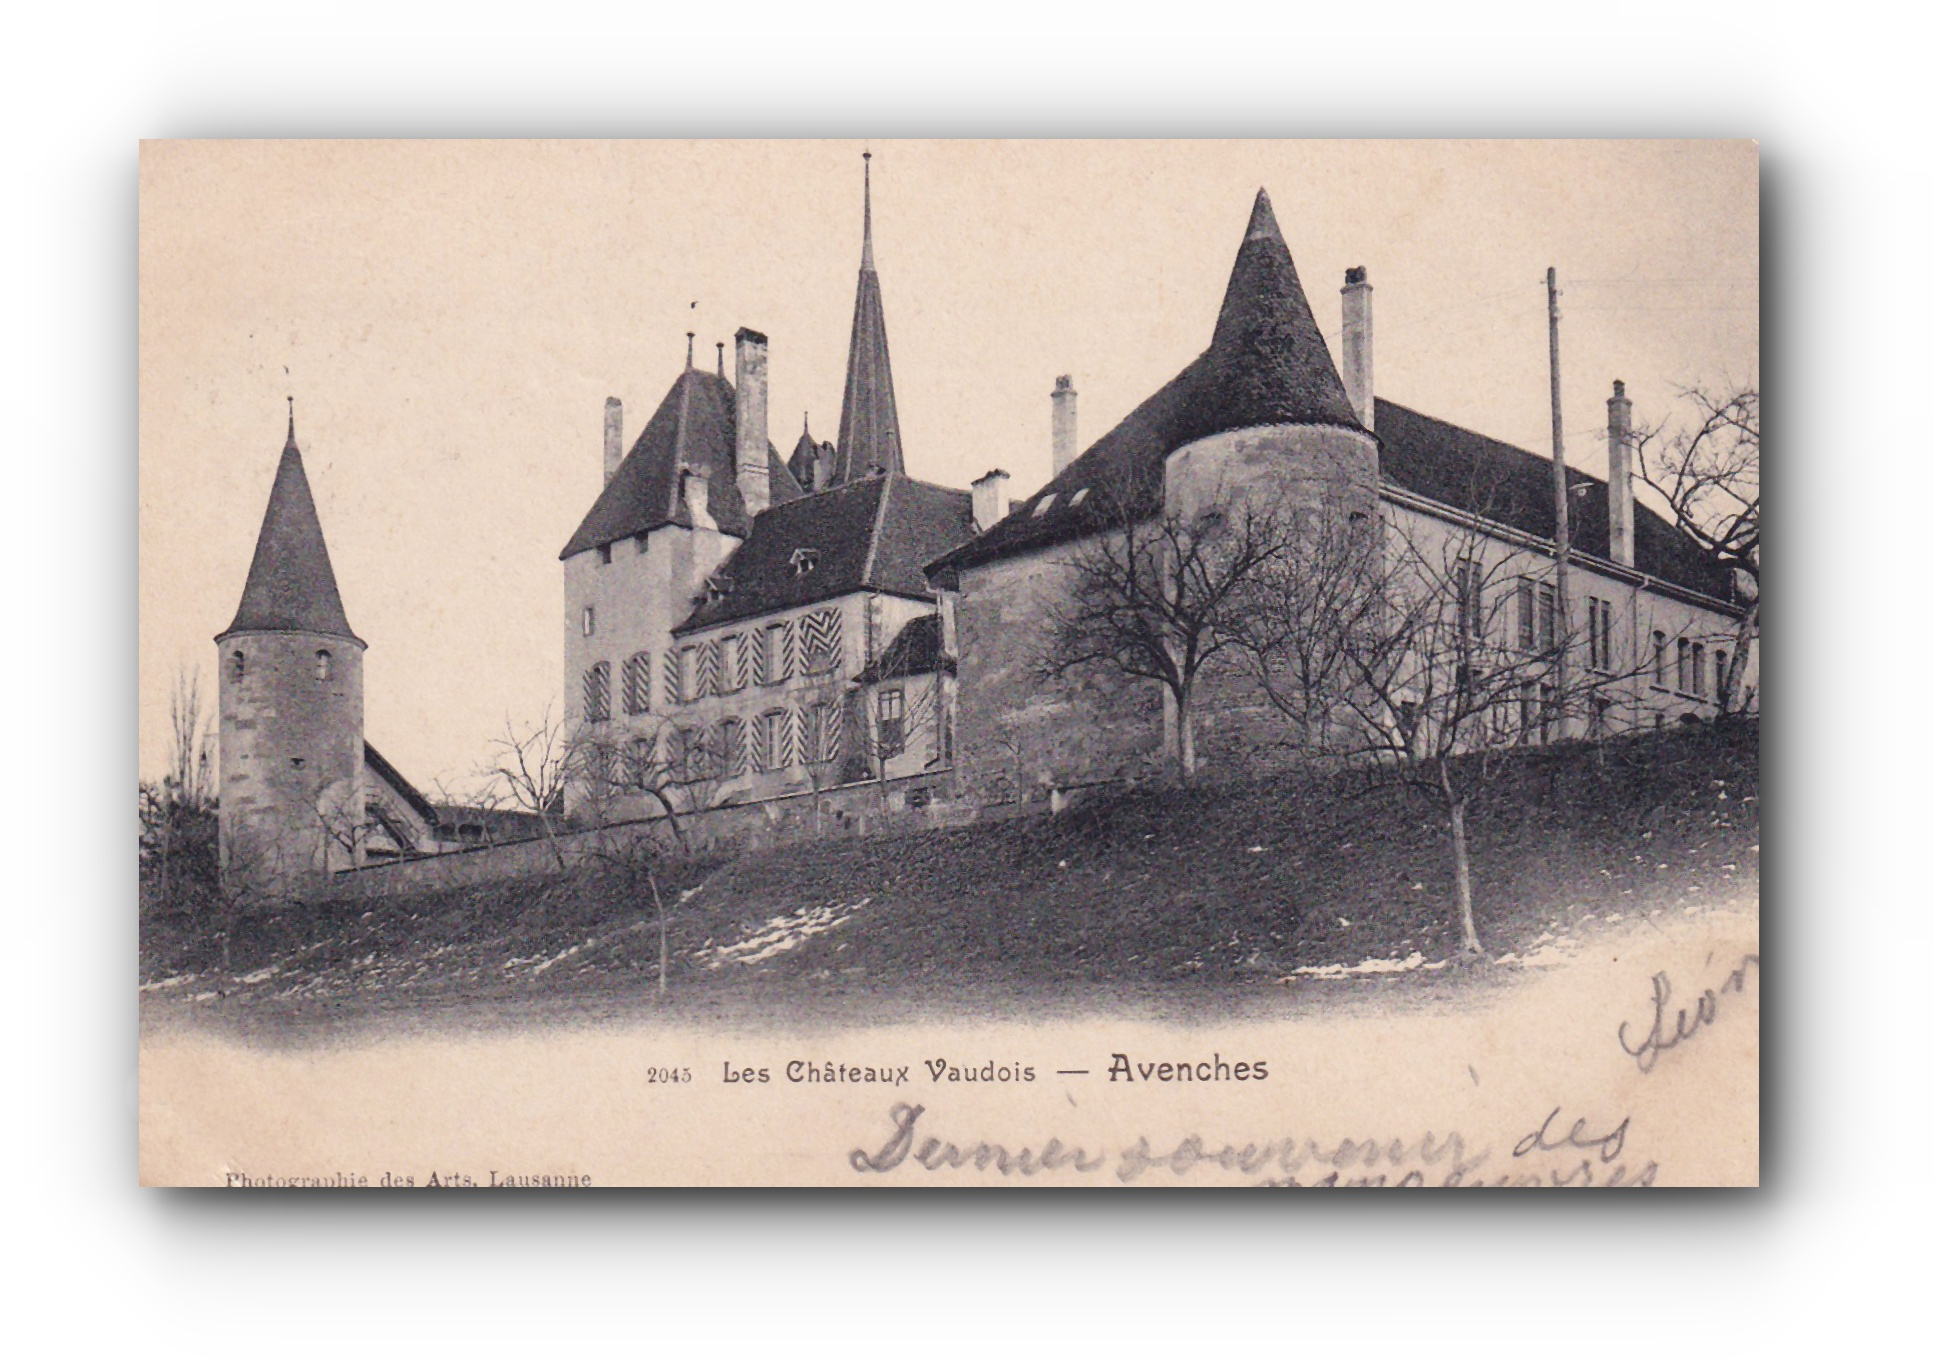 - Les châteaux Vaudois - AVENCHES - 16.09.1903 -